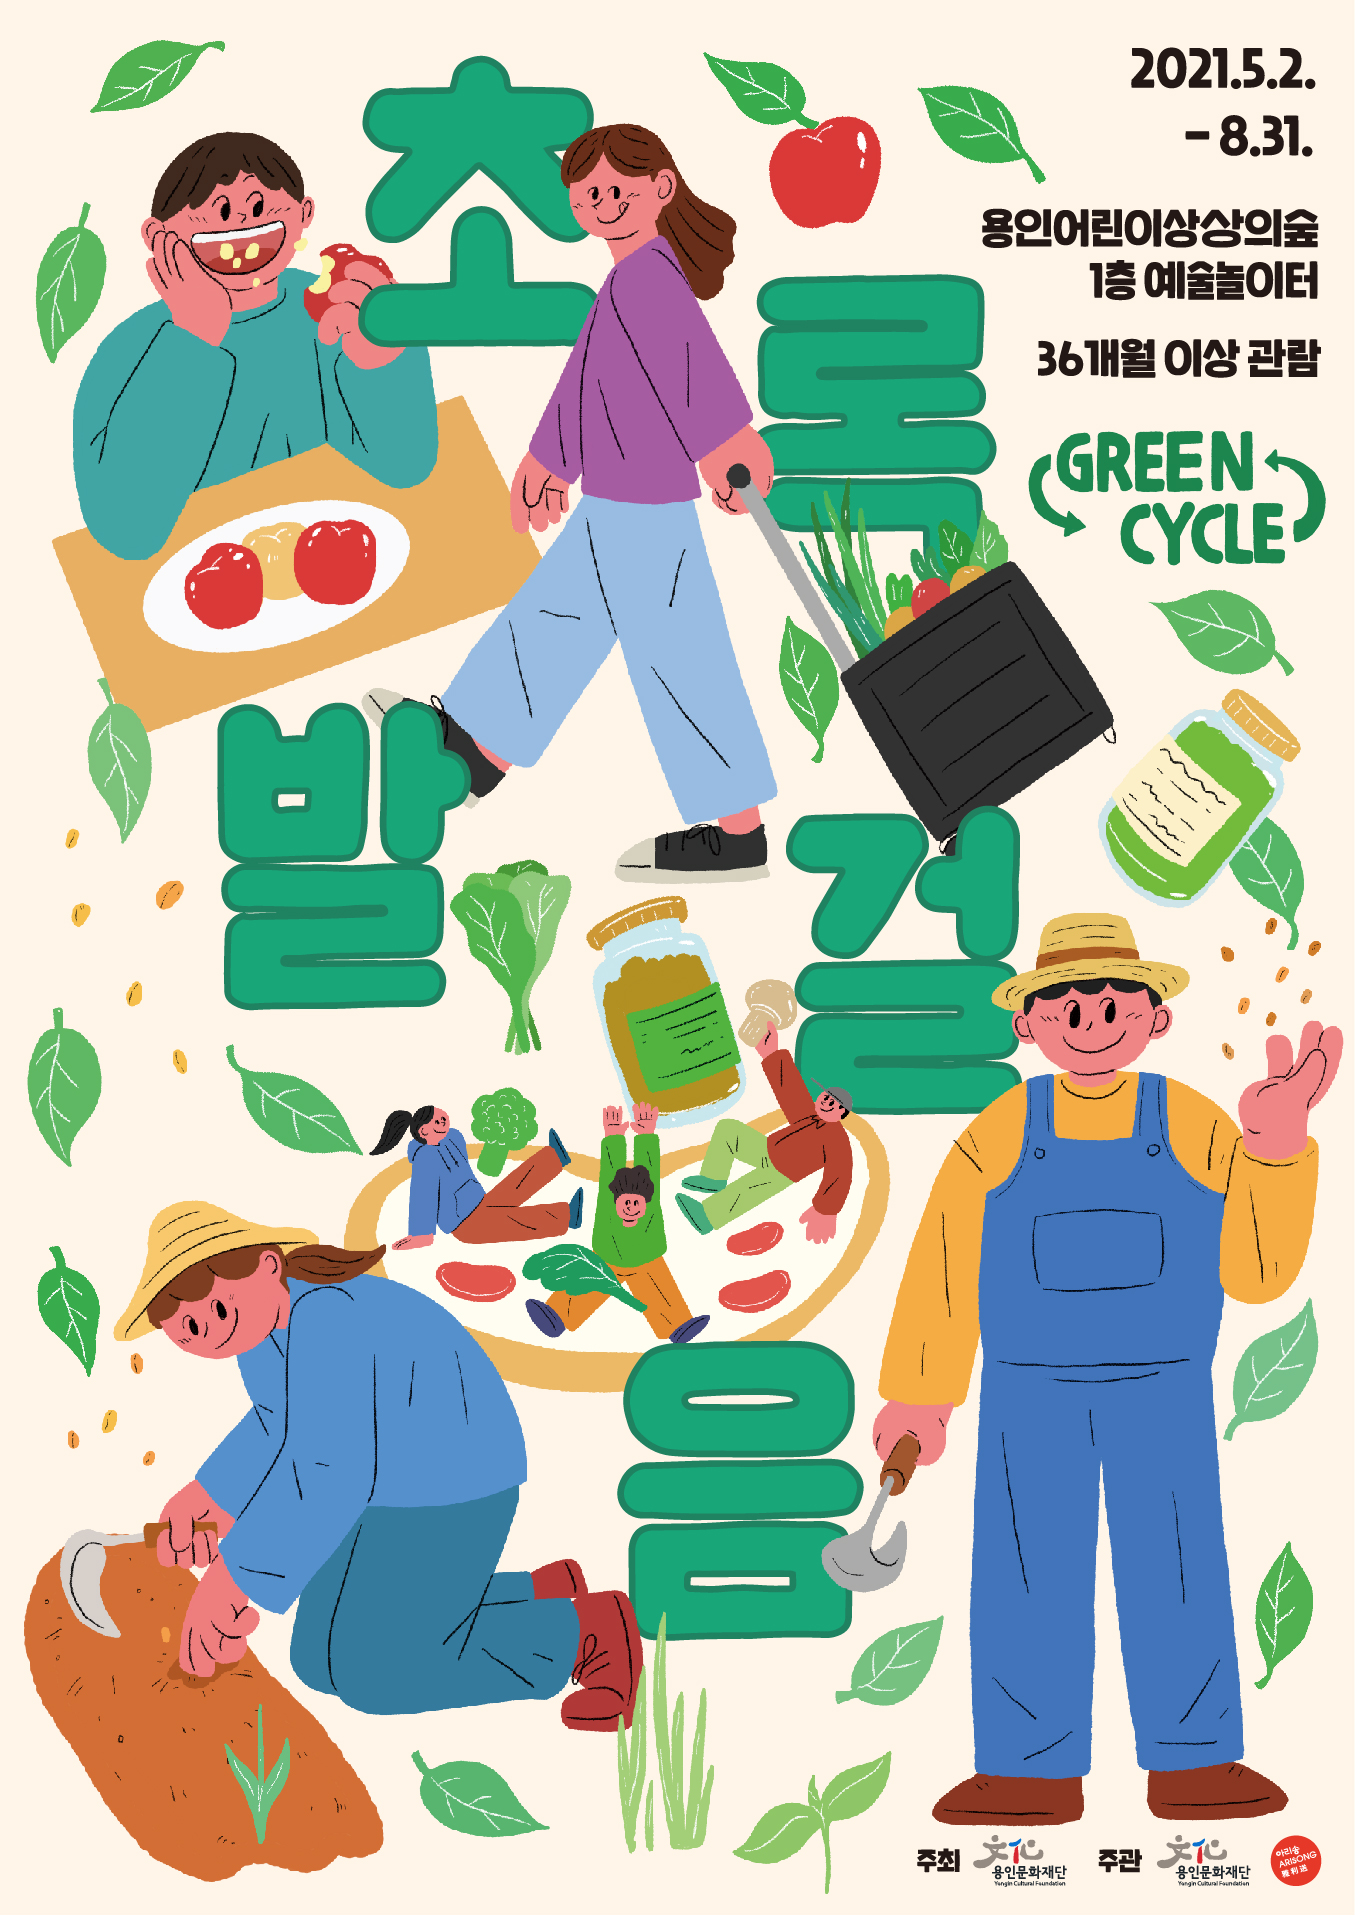 용인어린이상상의숲 예술놀이터<초록발걸음(Green Cycle)> 홍보포스터